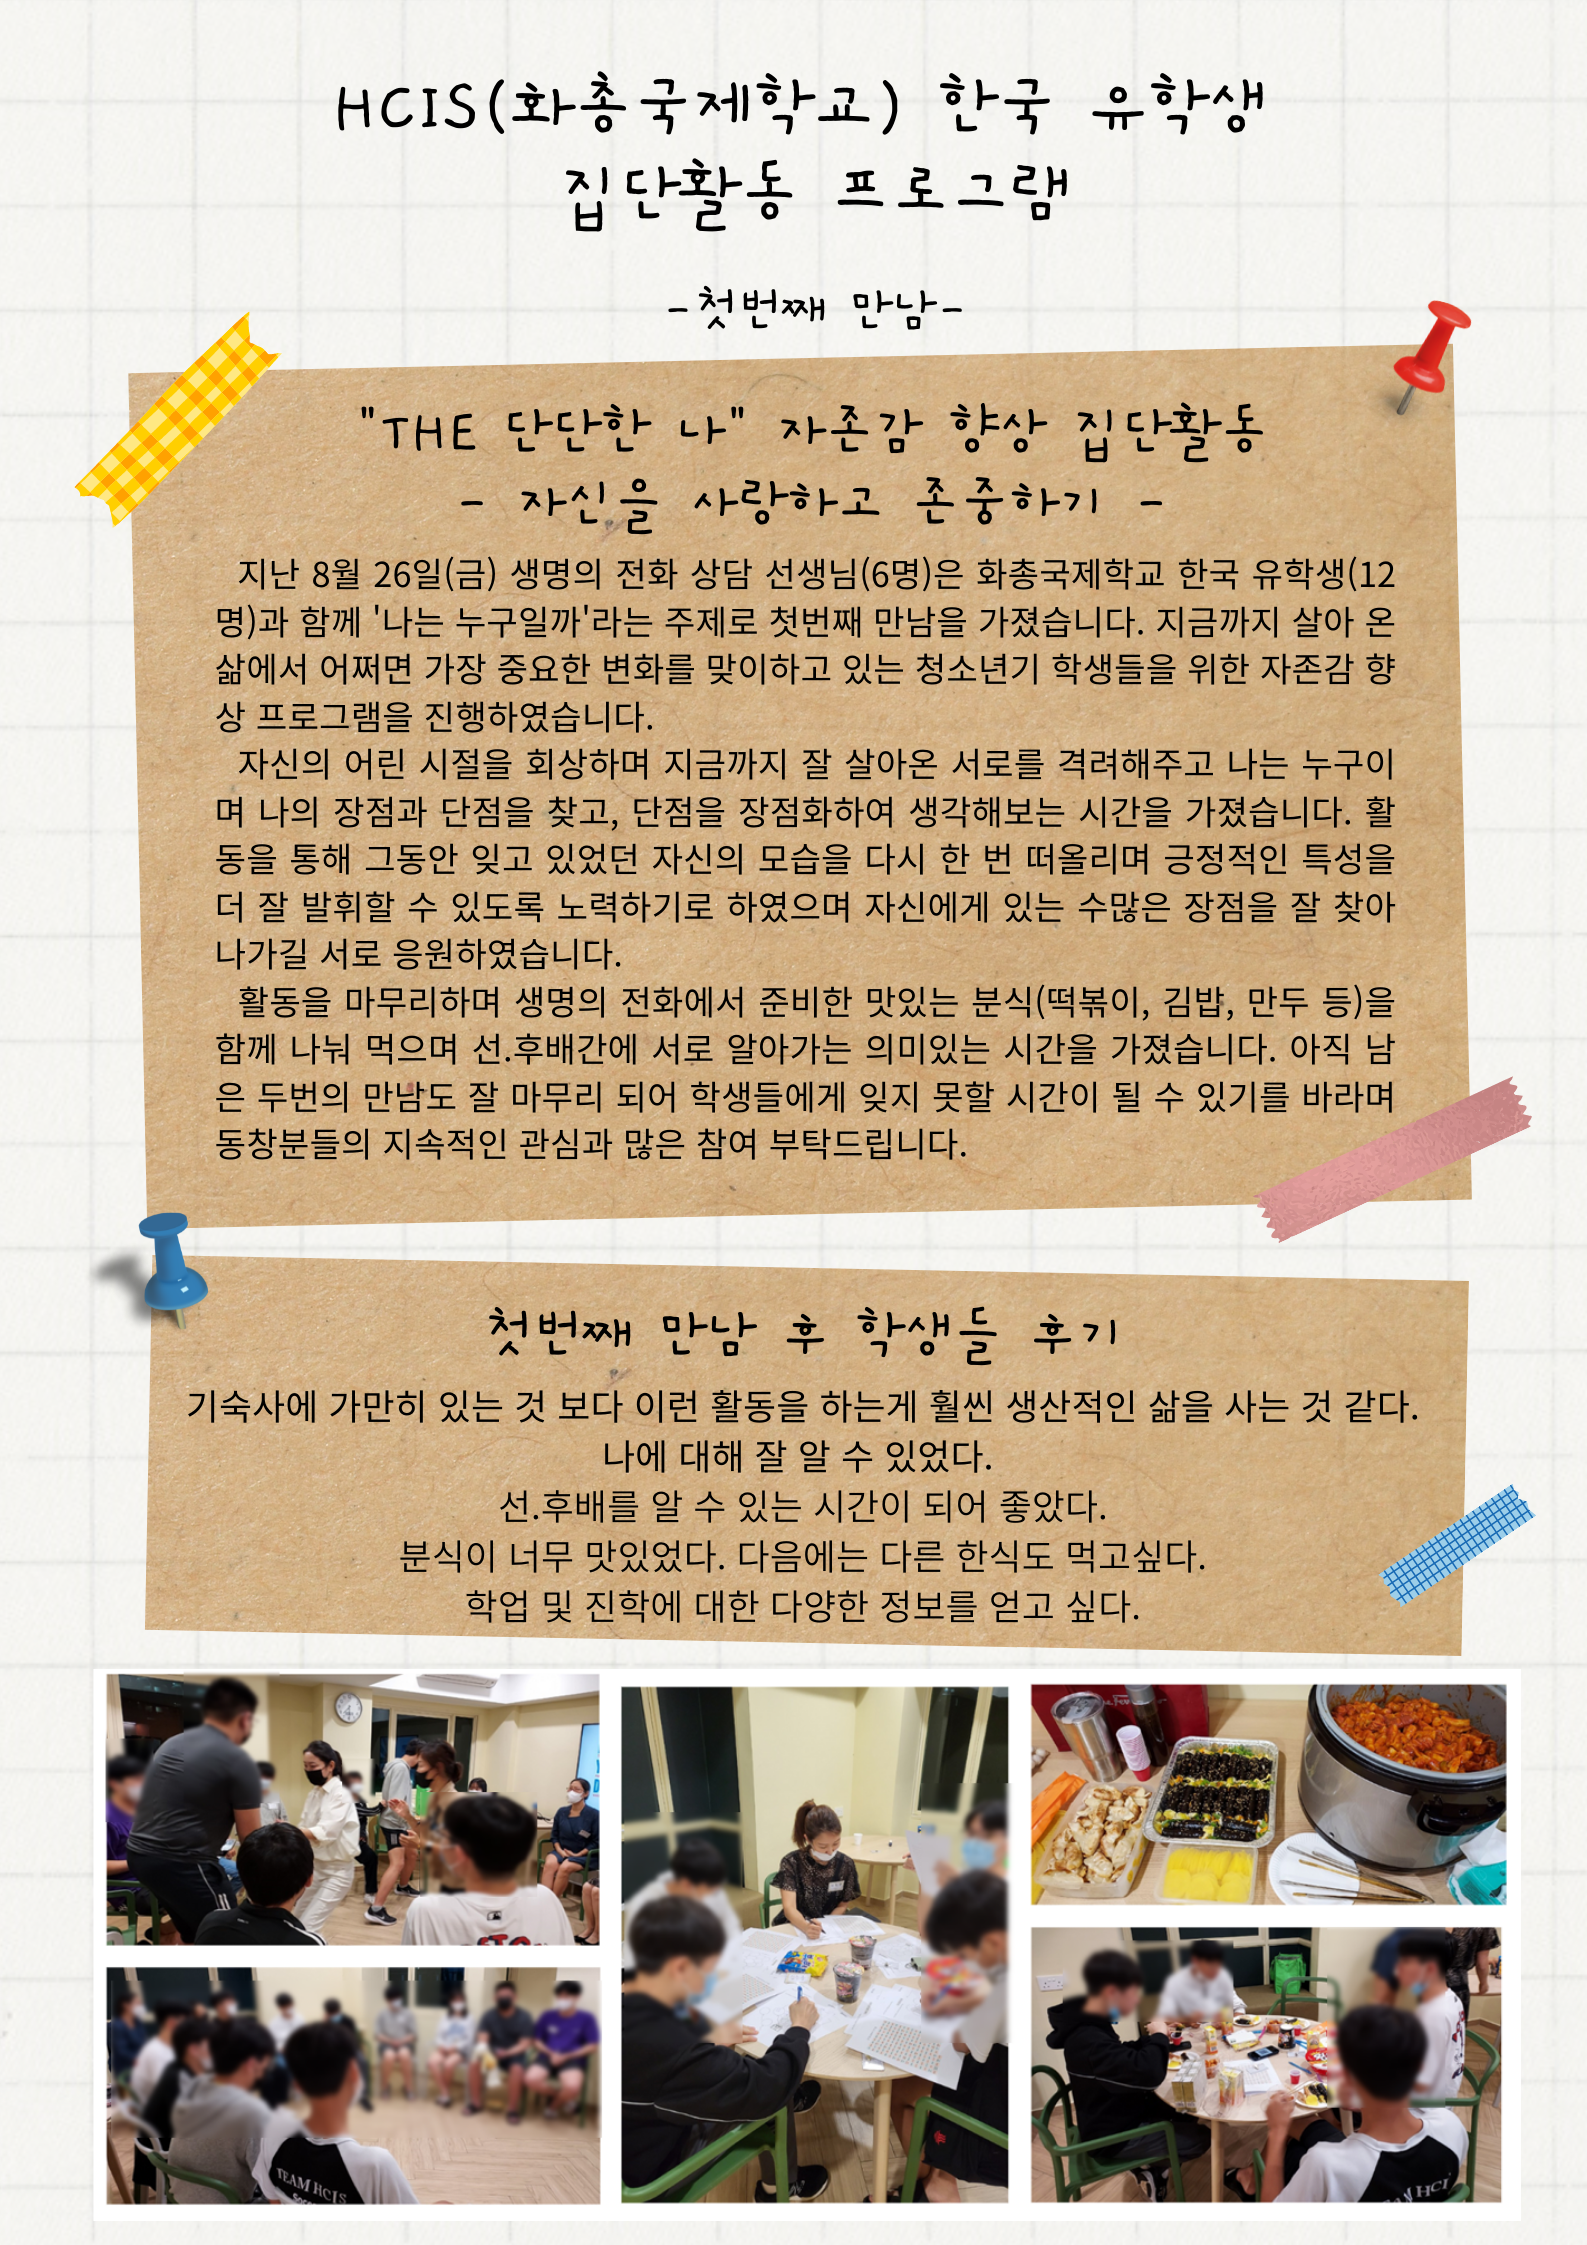 22.08.26_HCIS(화총국제학교) 한국 유학생 집단활동 프로그램_1차시.png